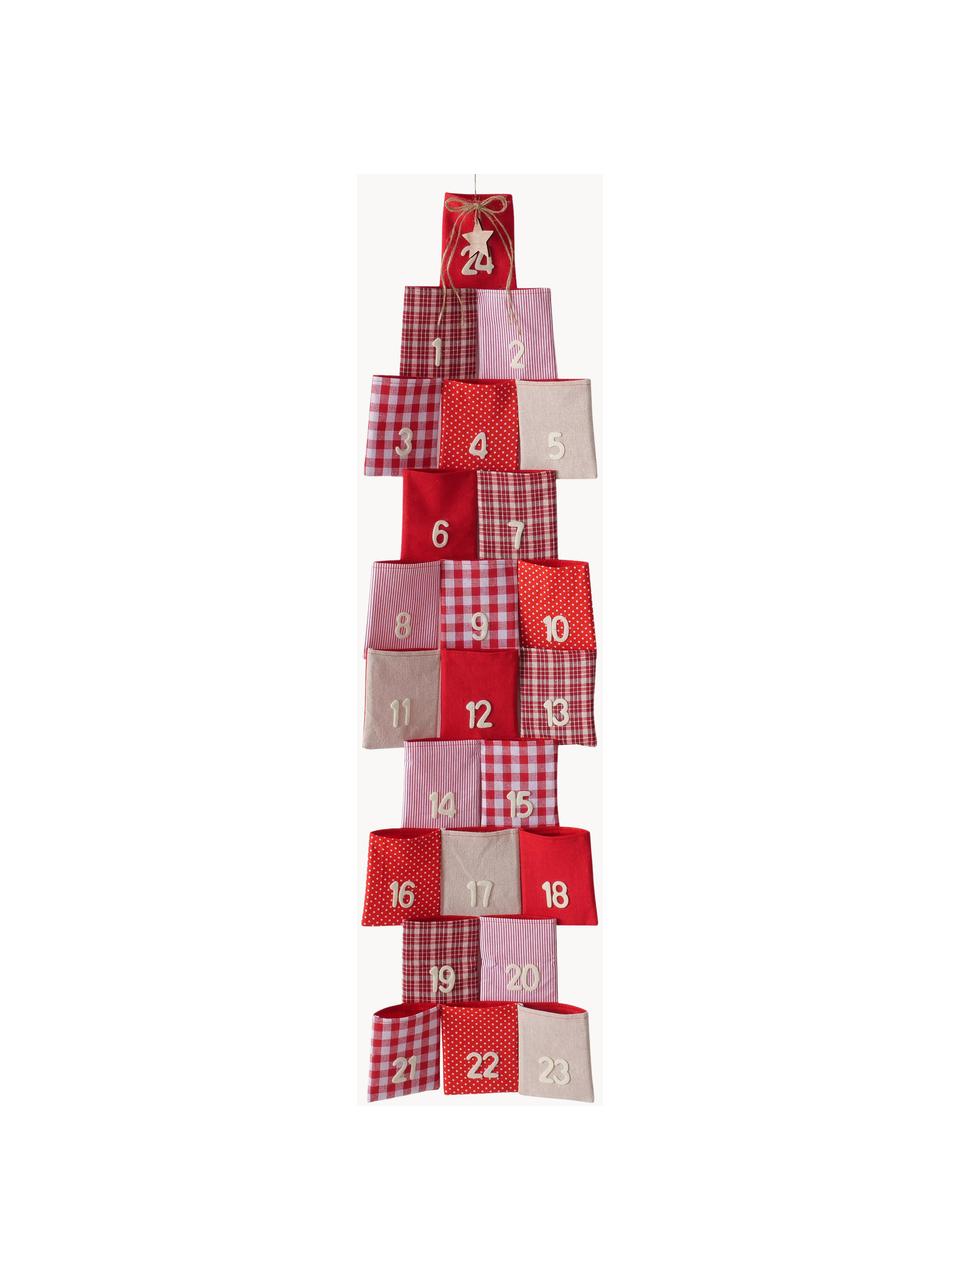 Calendrier de l'Avent Edala, haut. 110 cm, Coton, feutre de polyester, Rouge, blanc, beige, larg. 29 x haut. 110 cm